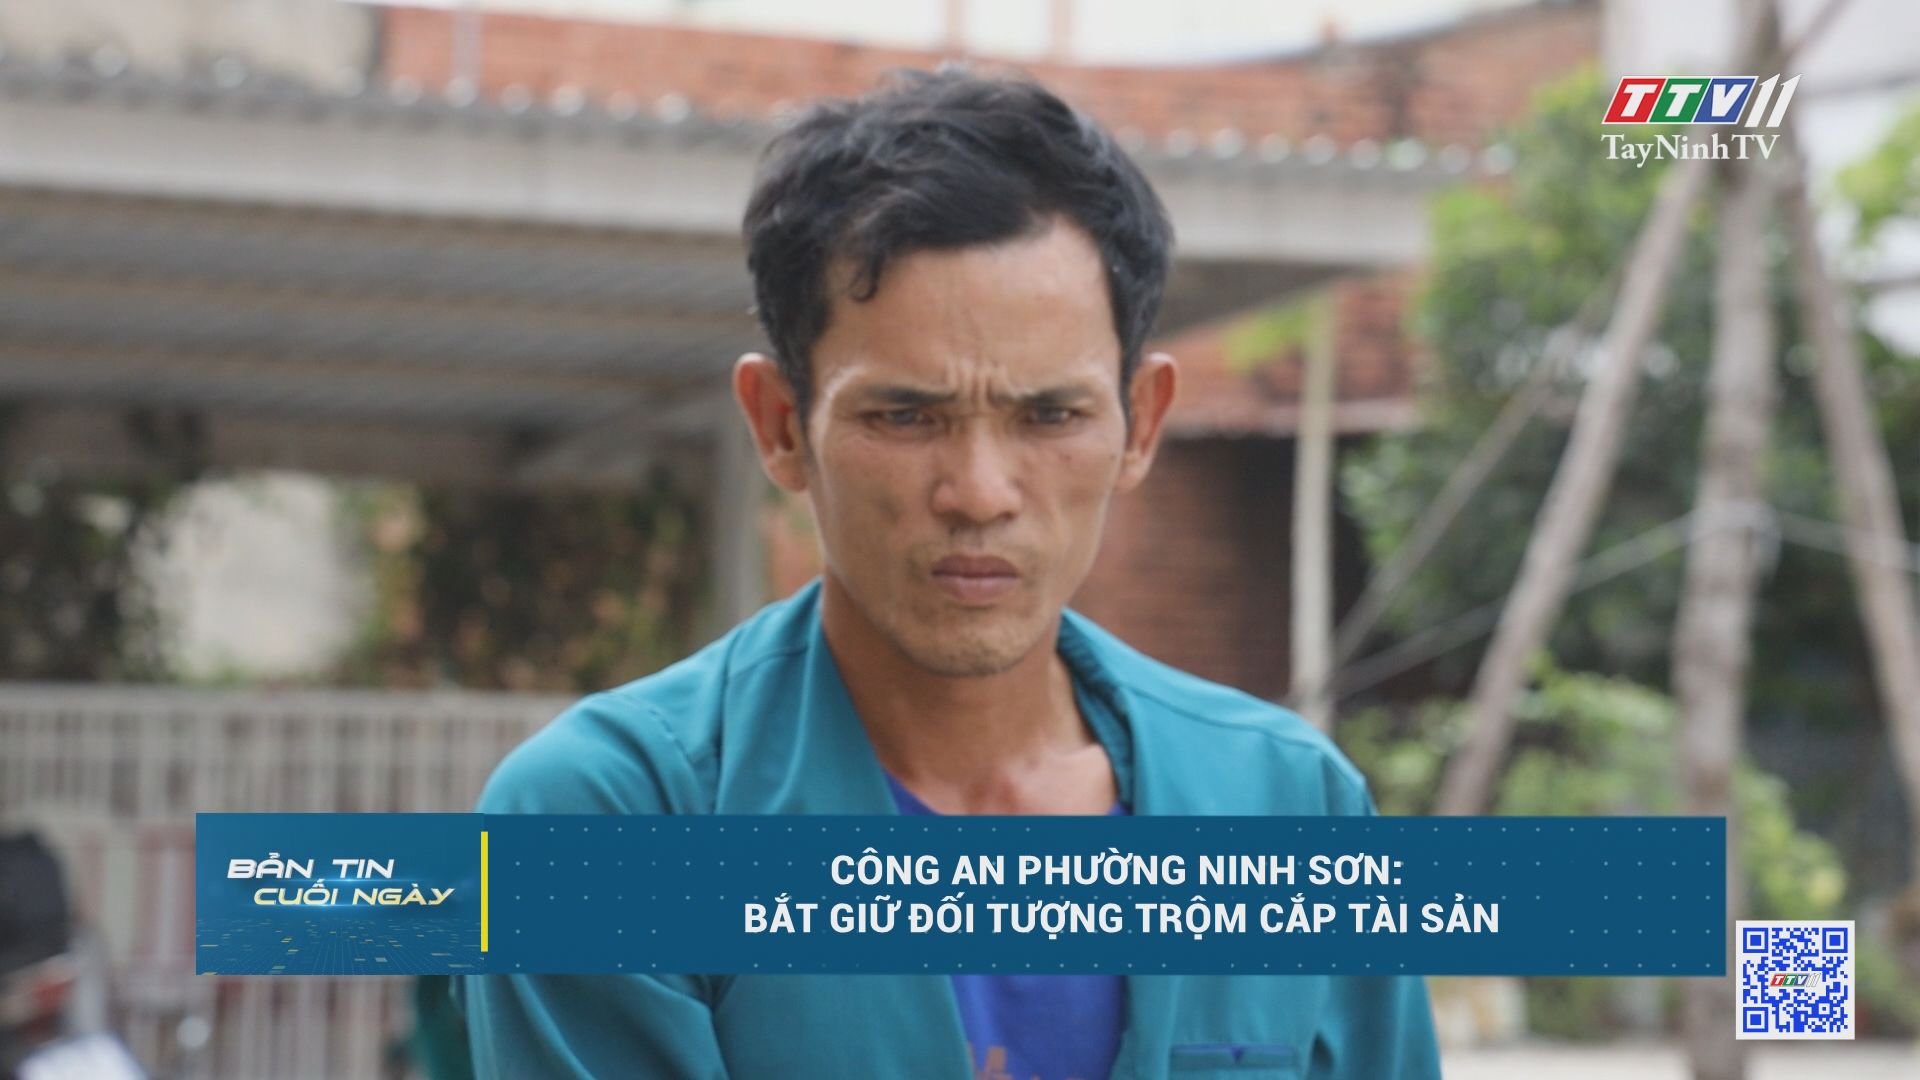 Công an phường Ninh Sơn: Bắt giữ đối tượng trộm cắp tài sản | AN NINH TRẬT TỰ | TayNinhTV